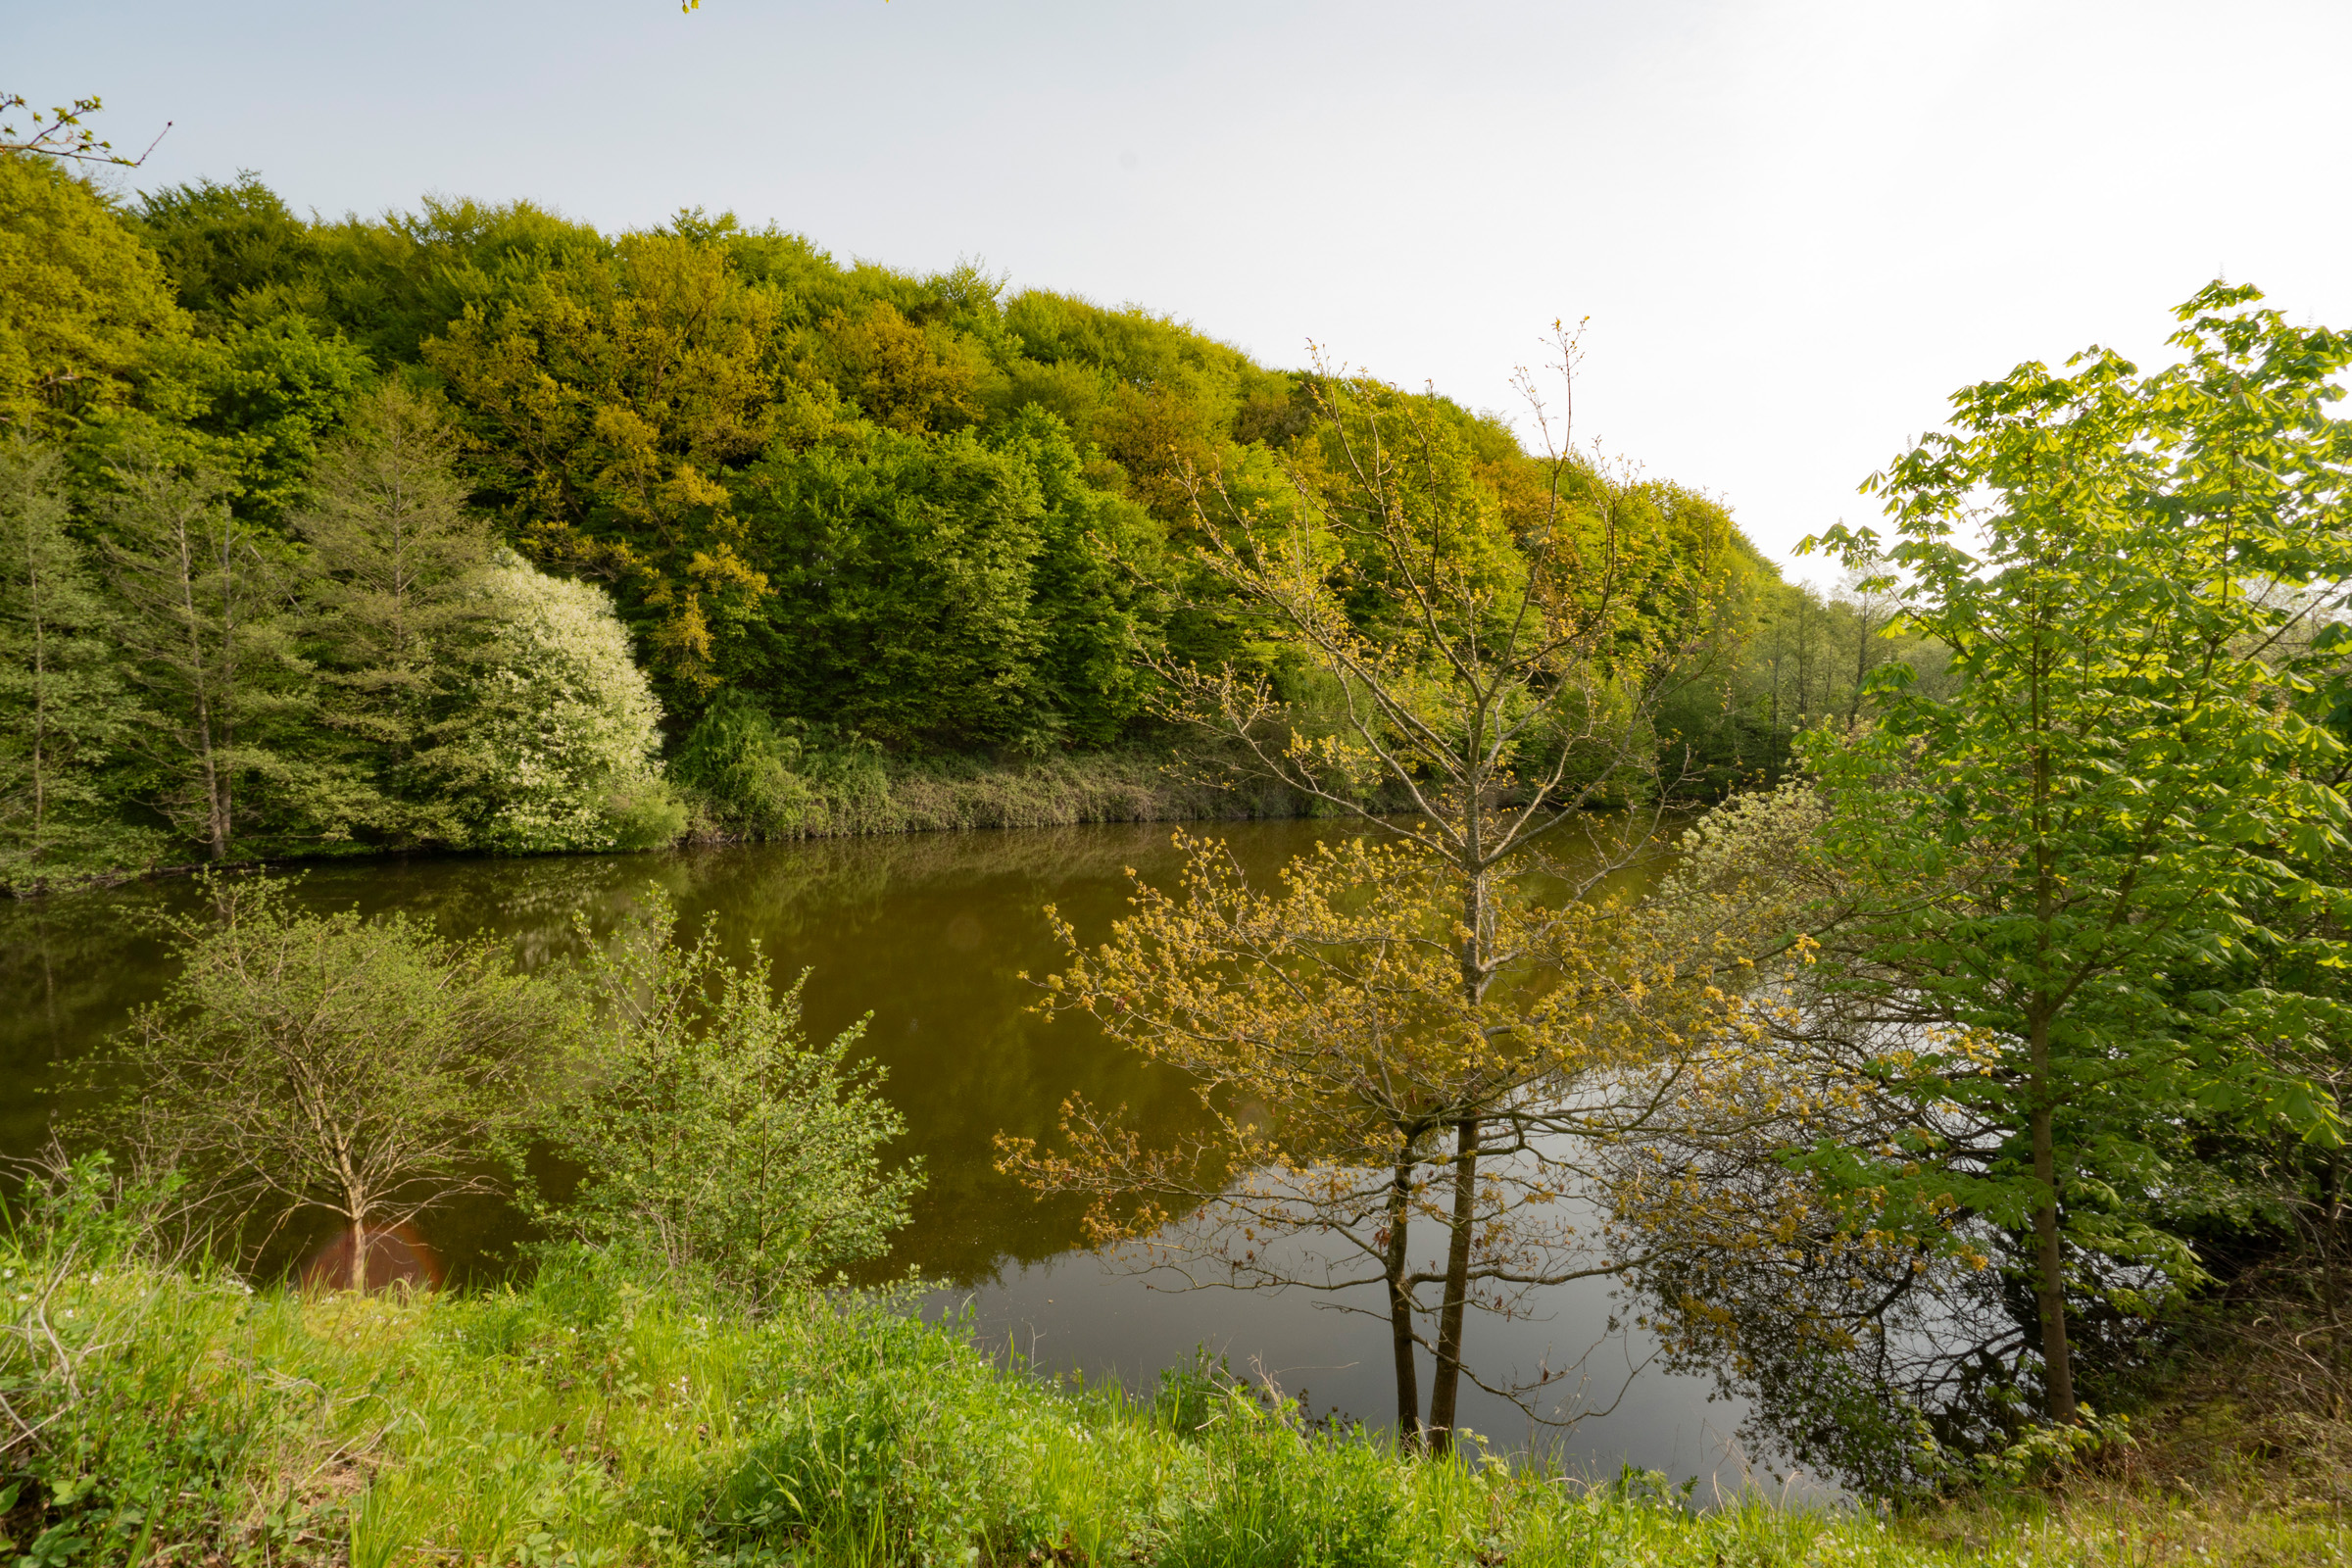 Kleiner Teich grenzt im Hintergrund an einen bewaldeten Hügel.